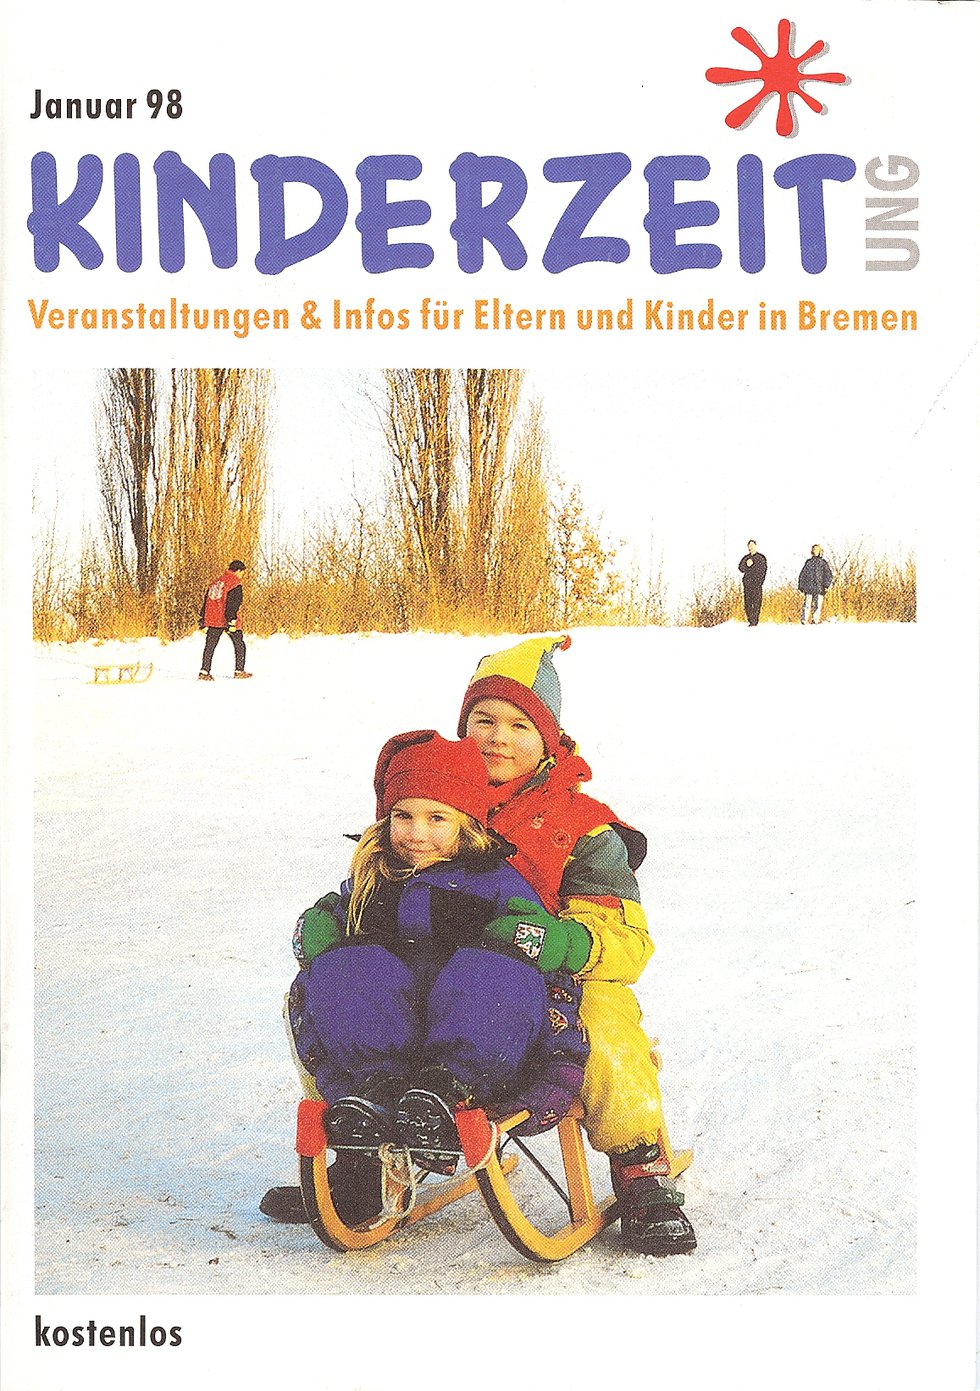 Das erste Cover der kinderzeitung